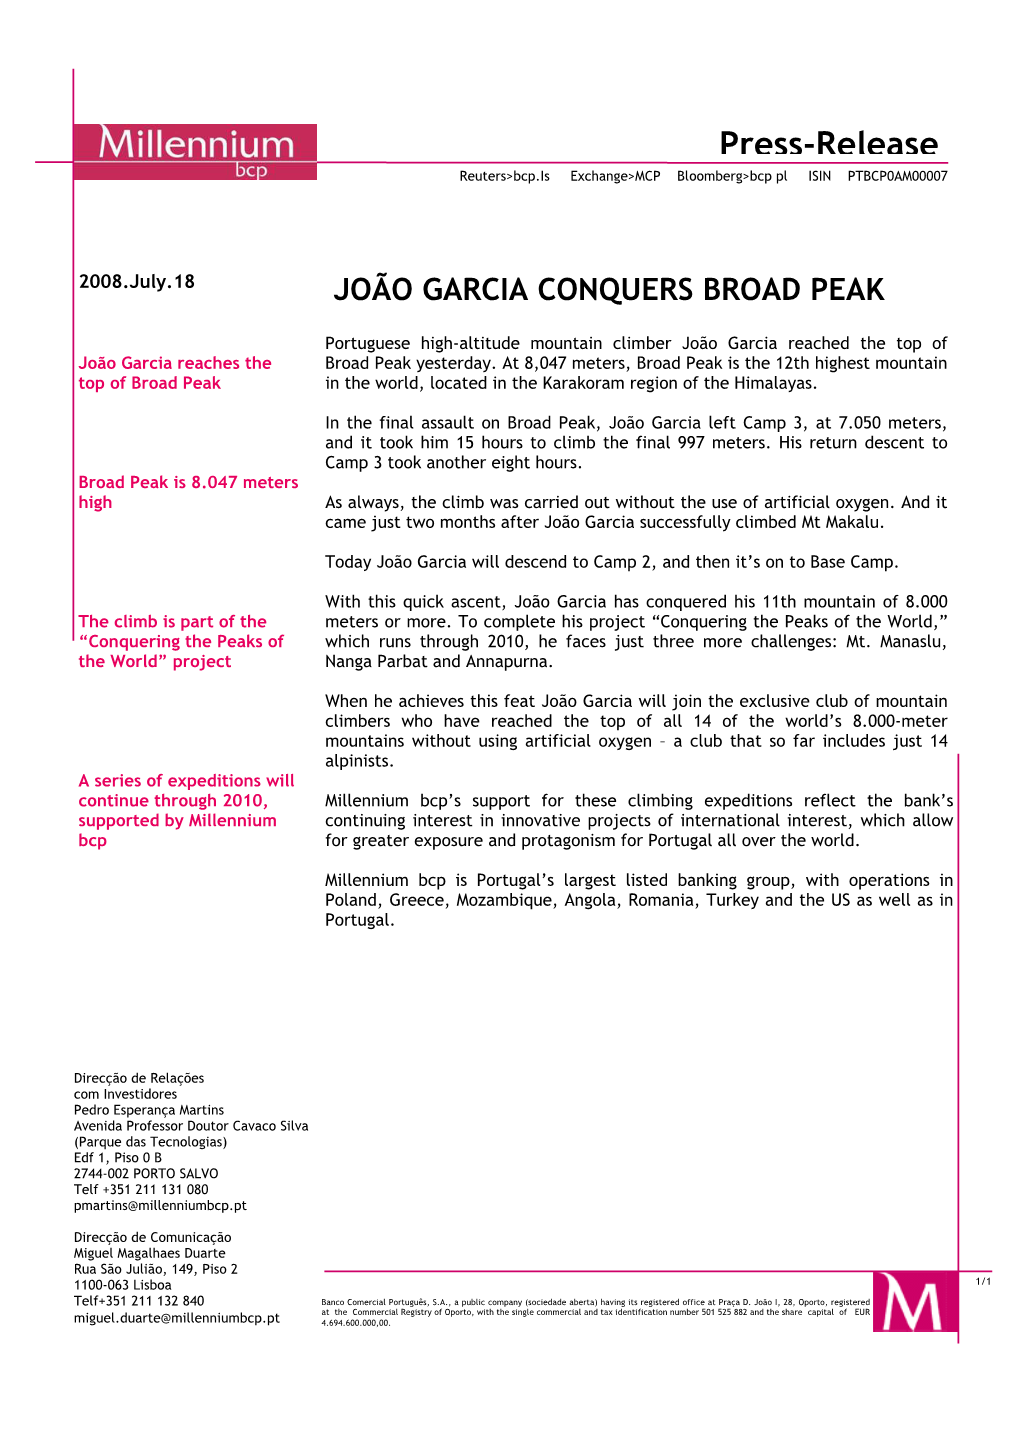 João Garcia Conquers Broad Peak